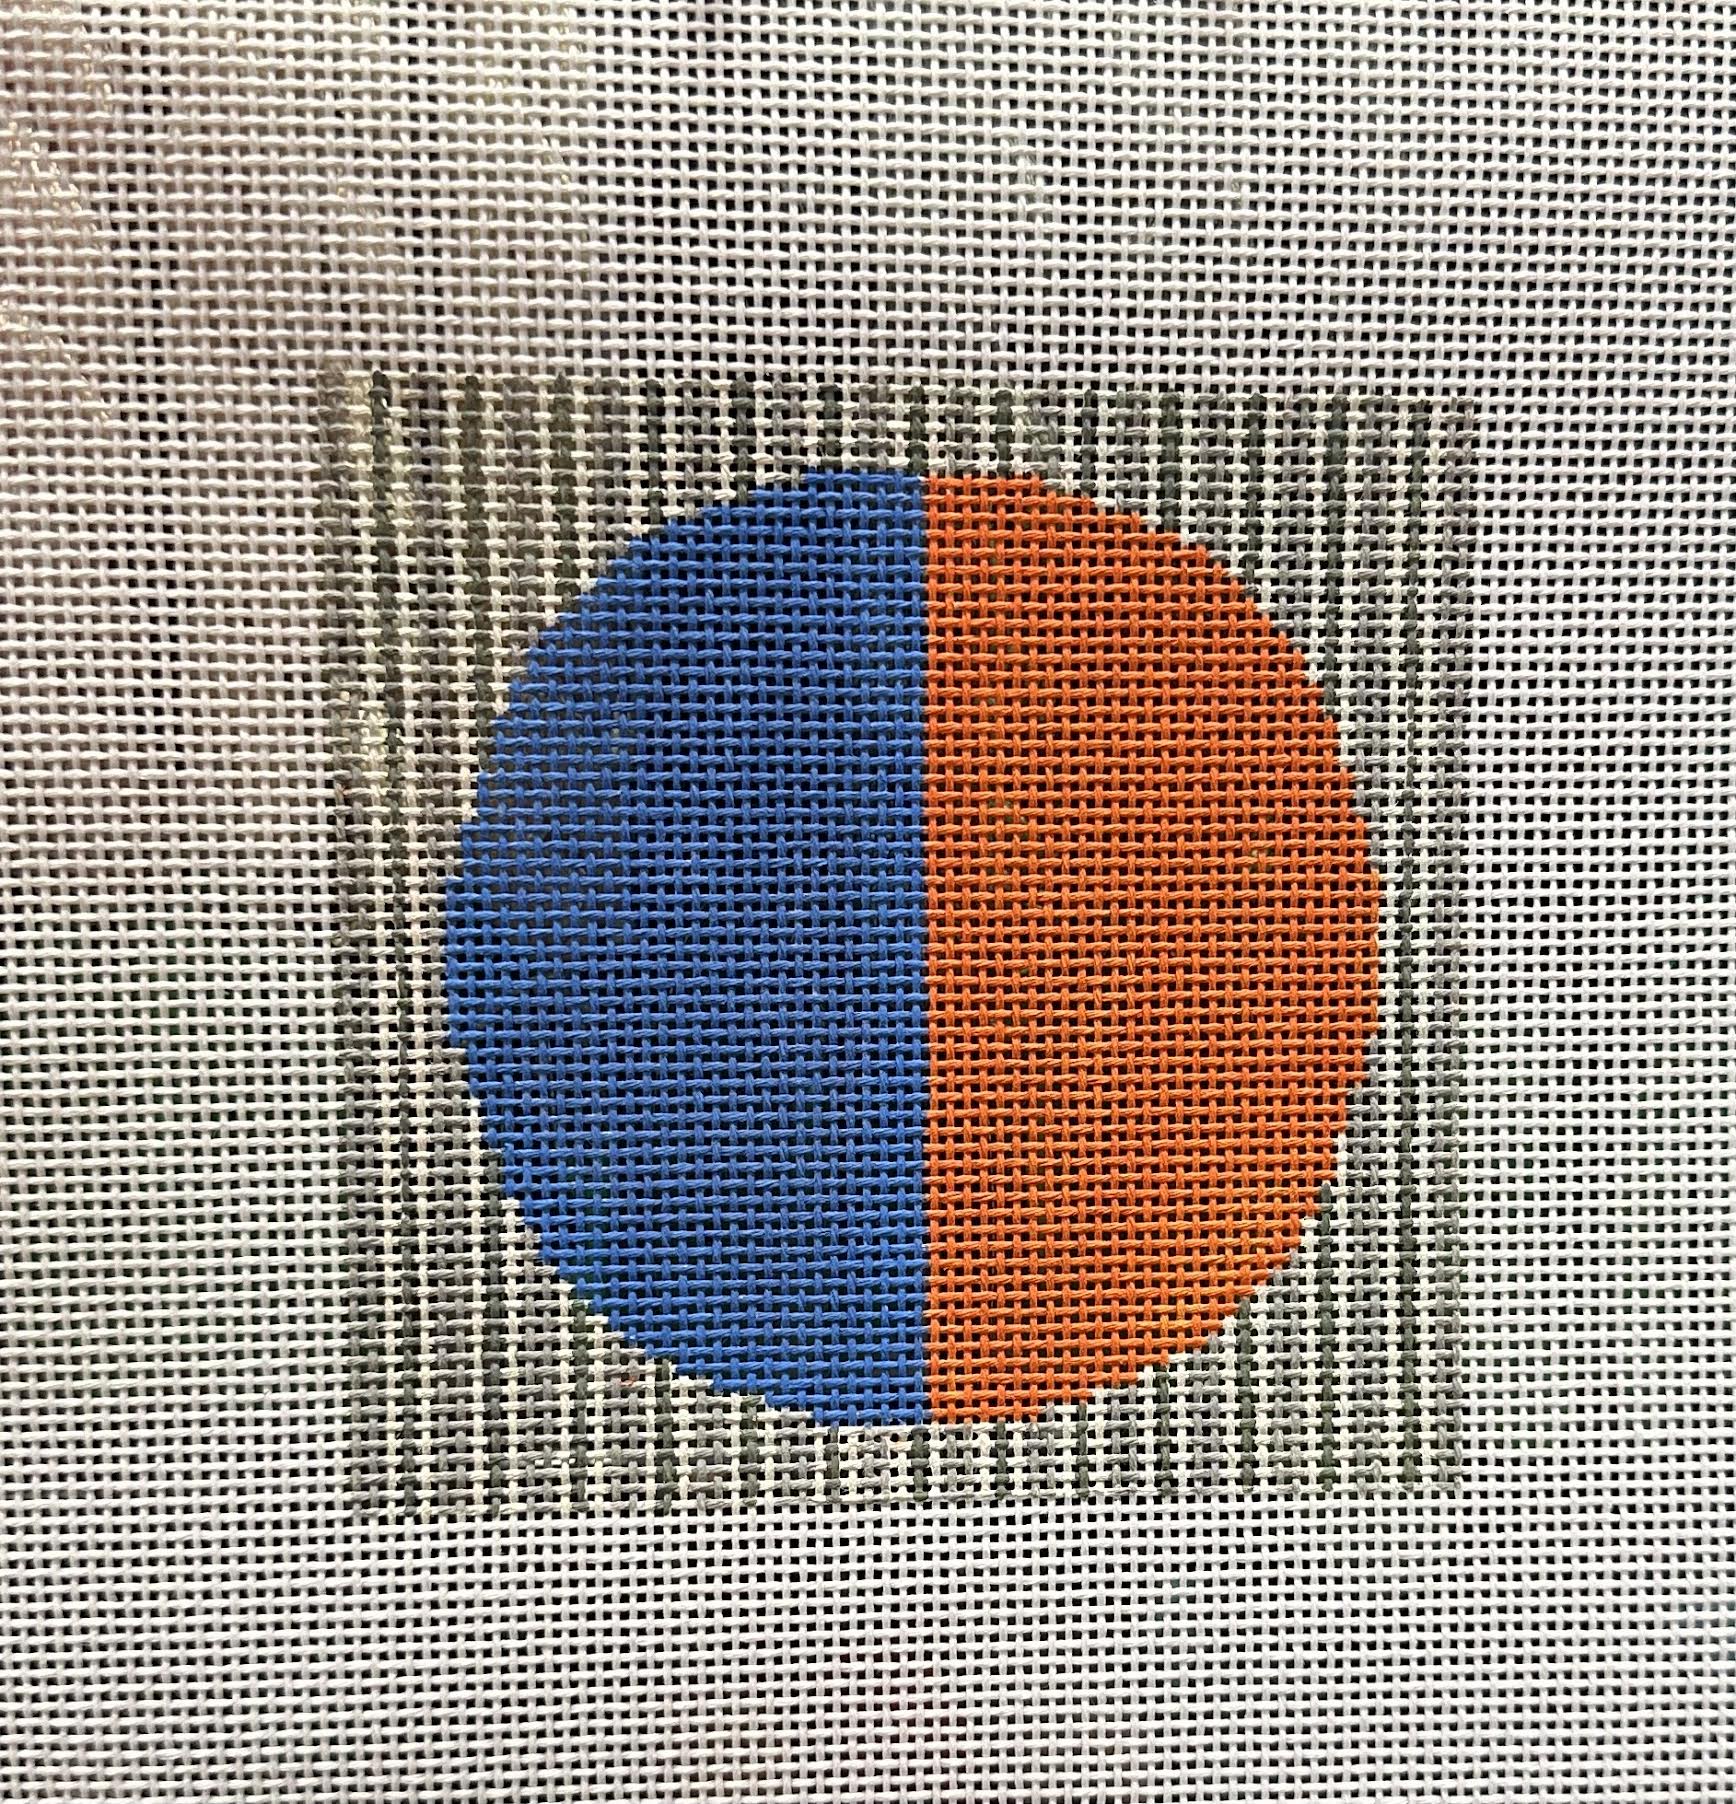 Stitch by Stitch Beginner Canvas - Blue/Orange Circle